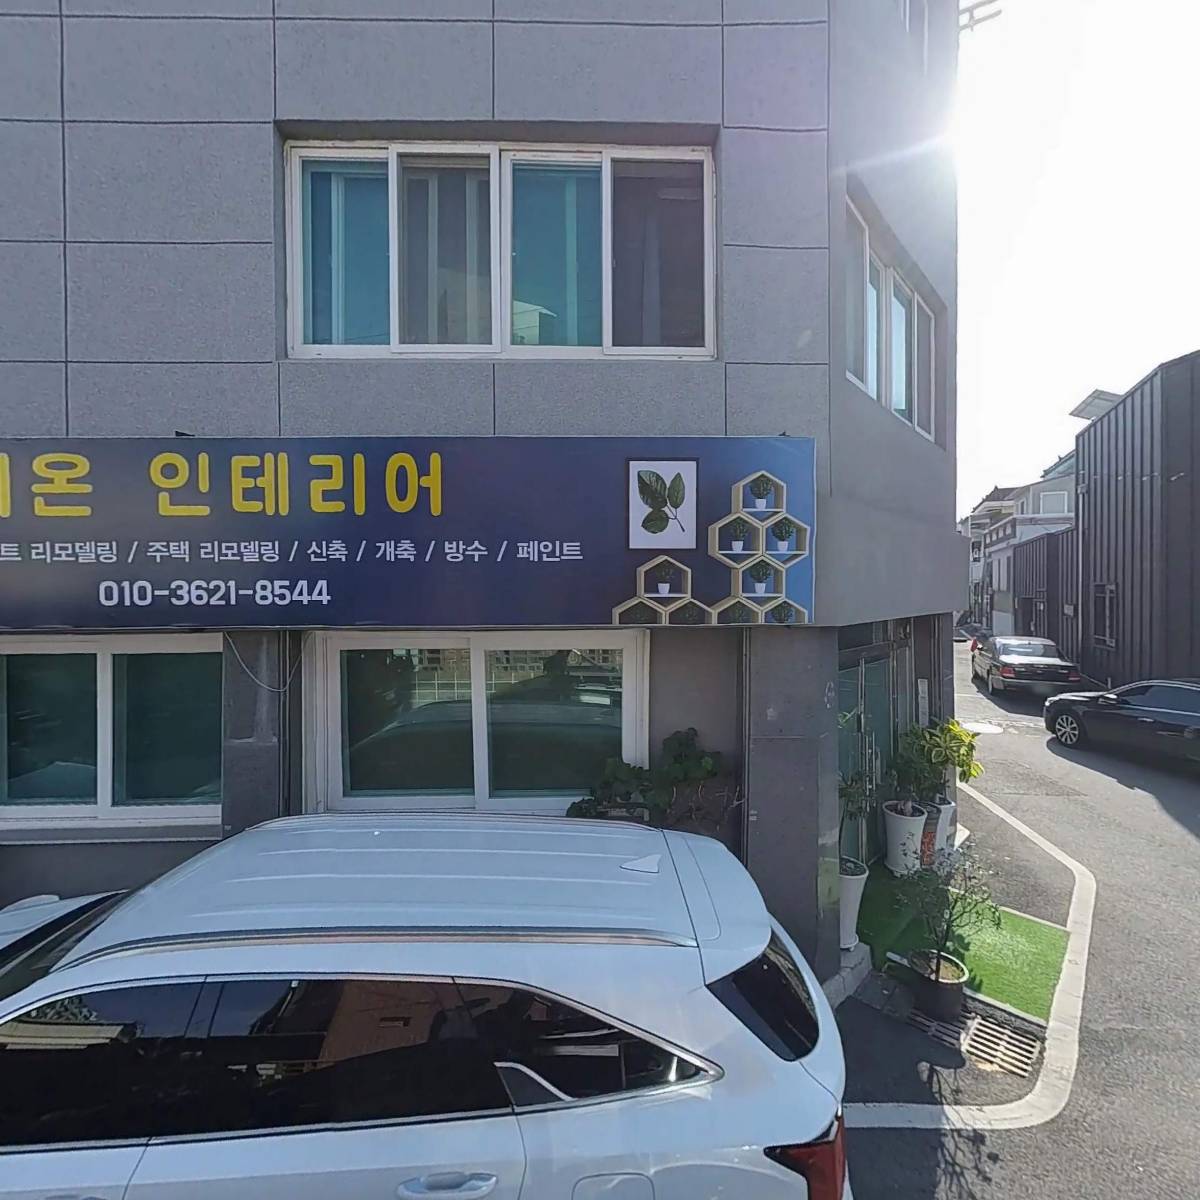 광주북구동신지역자활센터 The 드림